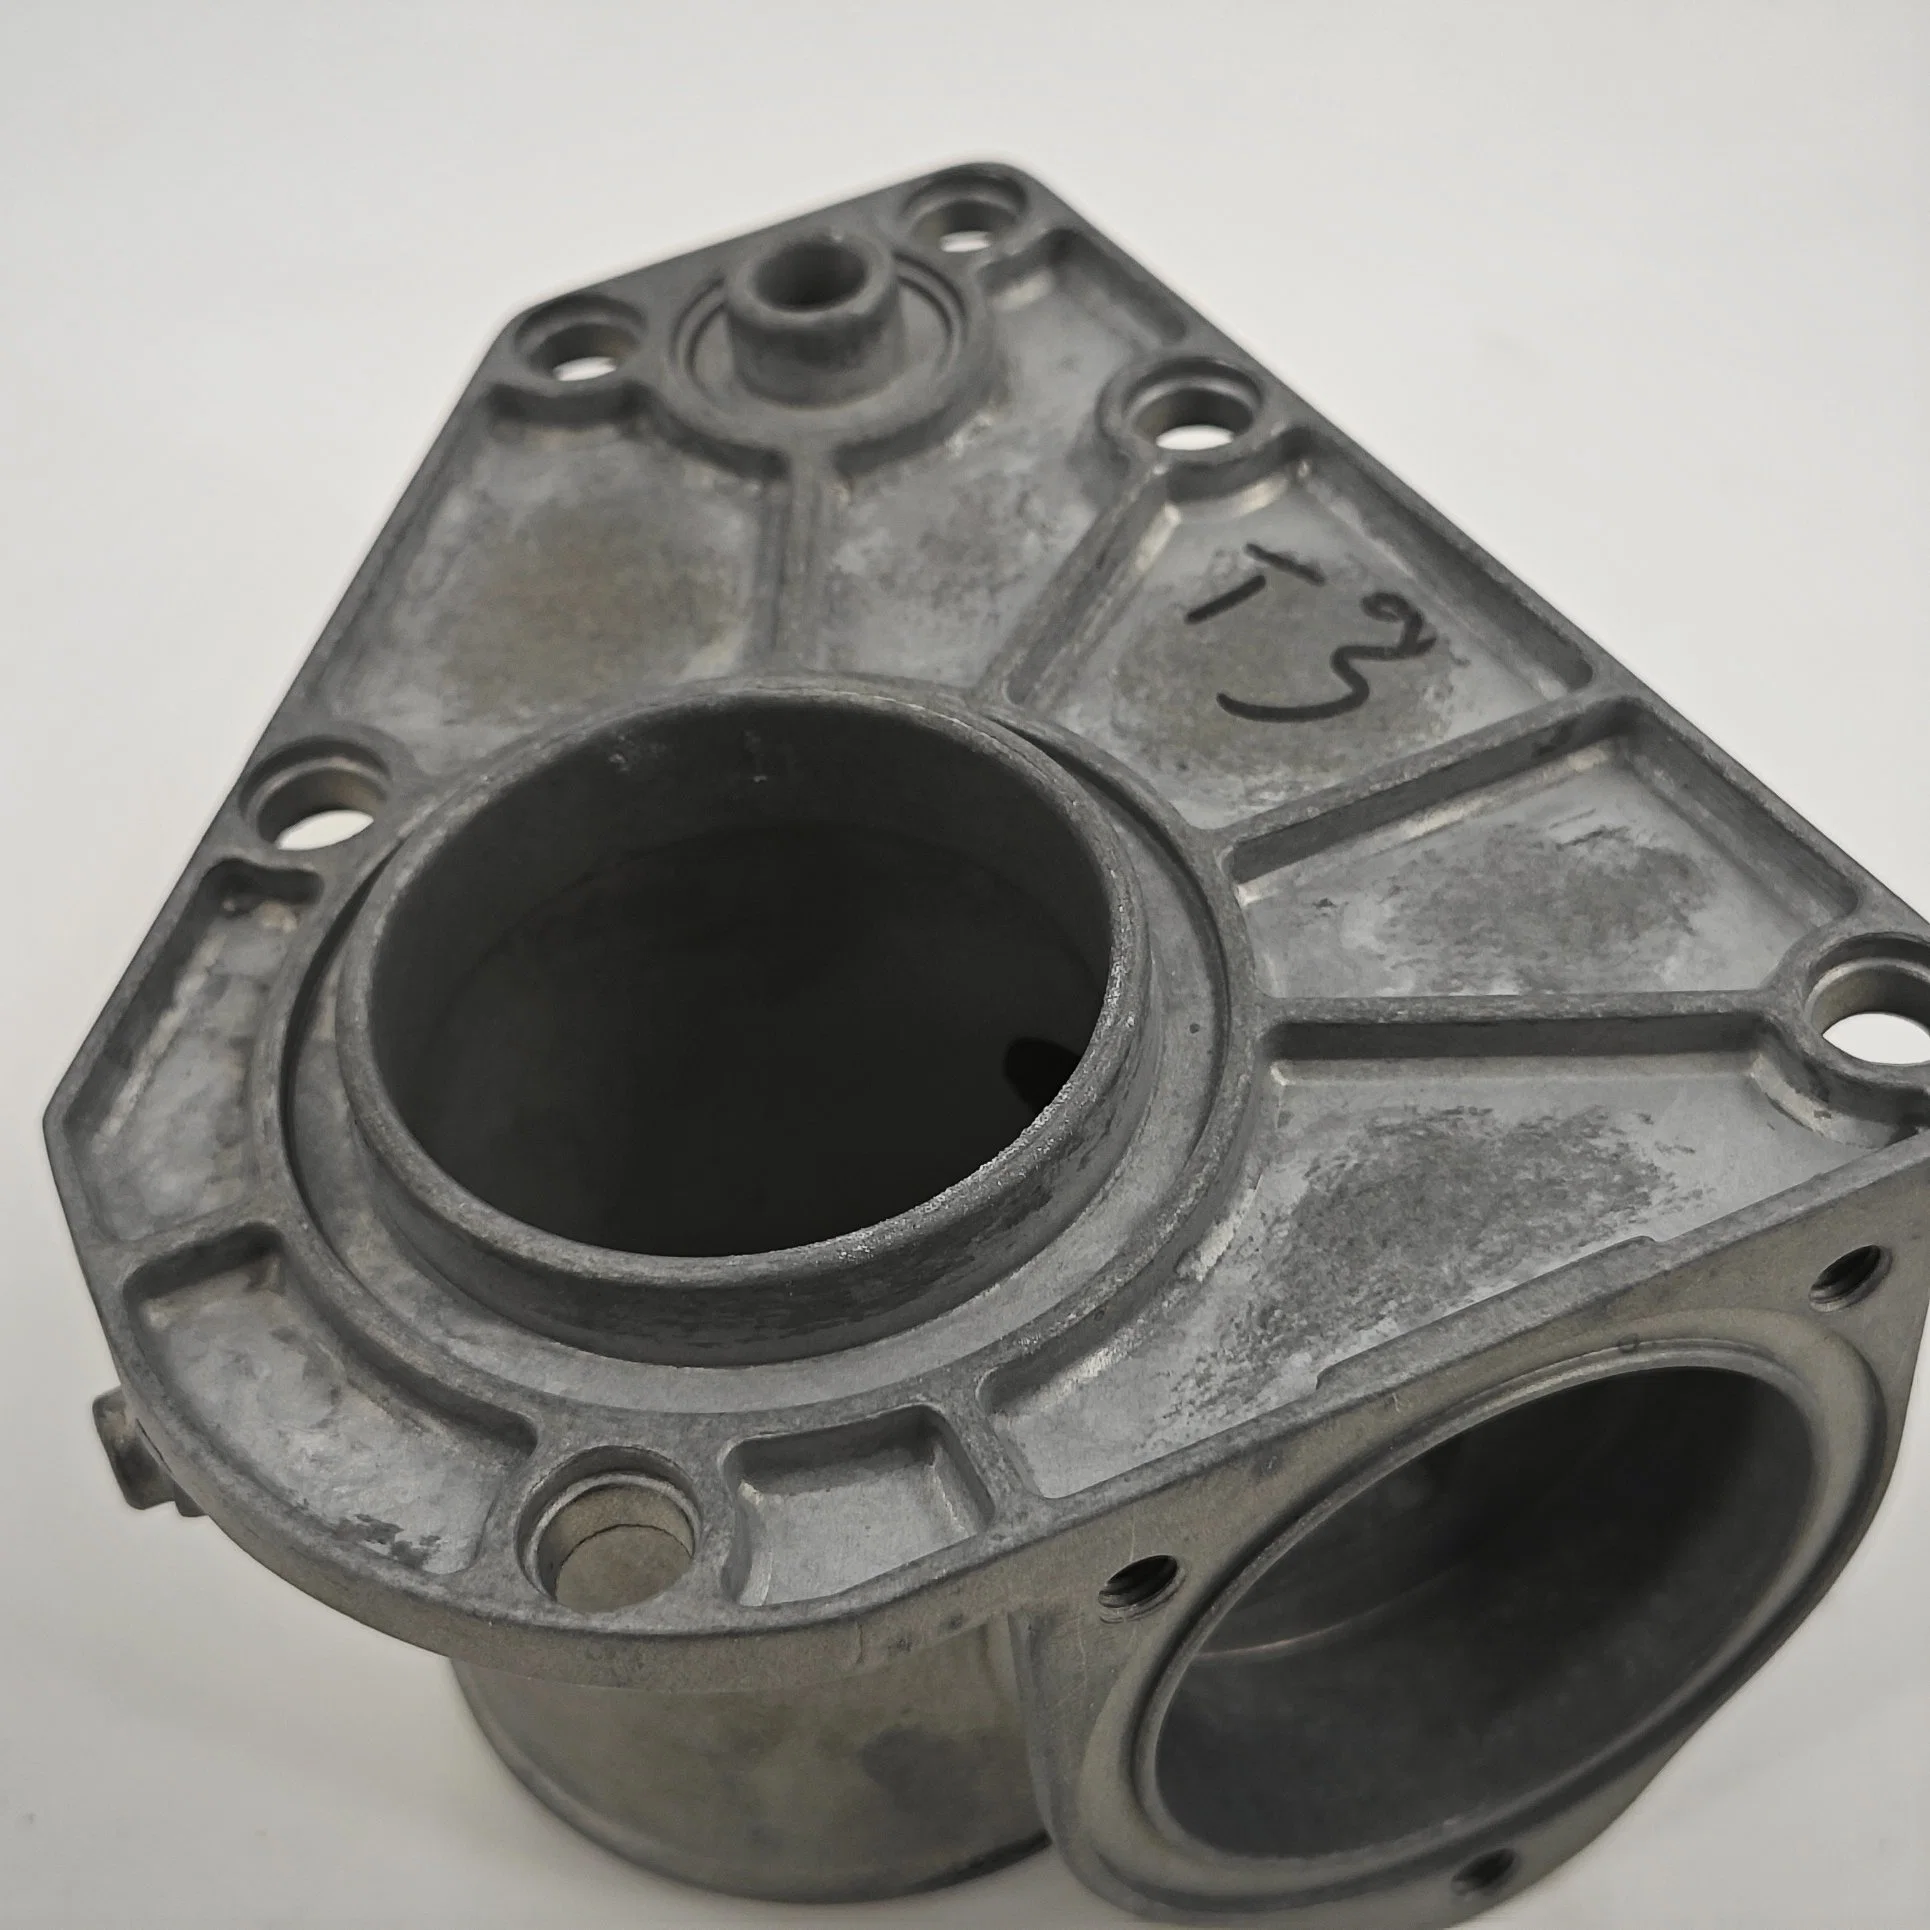 Fábrica a medida CNC Maquinaria Maquinaria Automoción Moto Metal piezas aluminio Fundición de troqueles